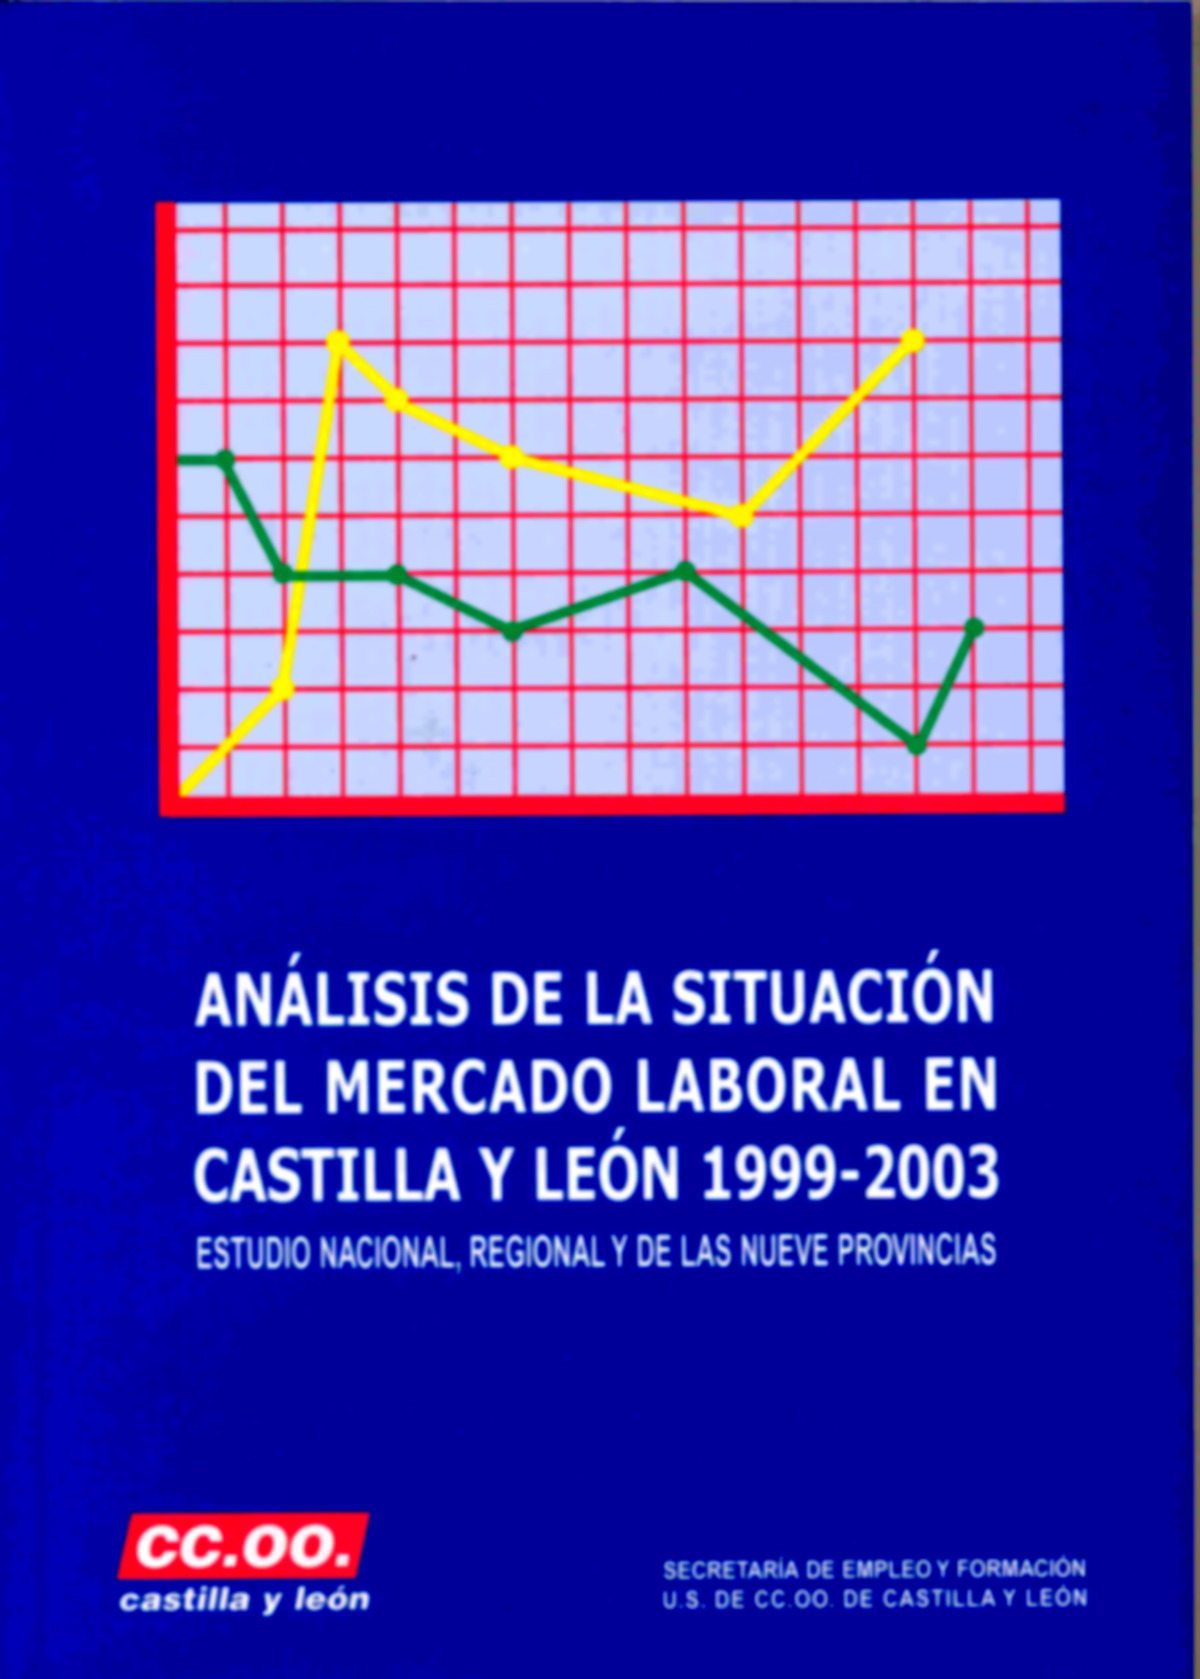 Esta publicación analiza el mercado laboral en Castilla y León, en el periodo 1999-2003, desagregando de forma particular las principales variables en cada una de las nueves provincias que conforman l